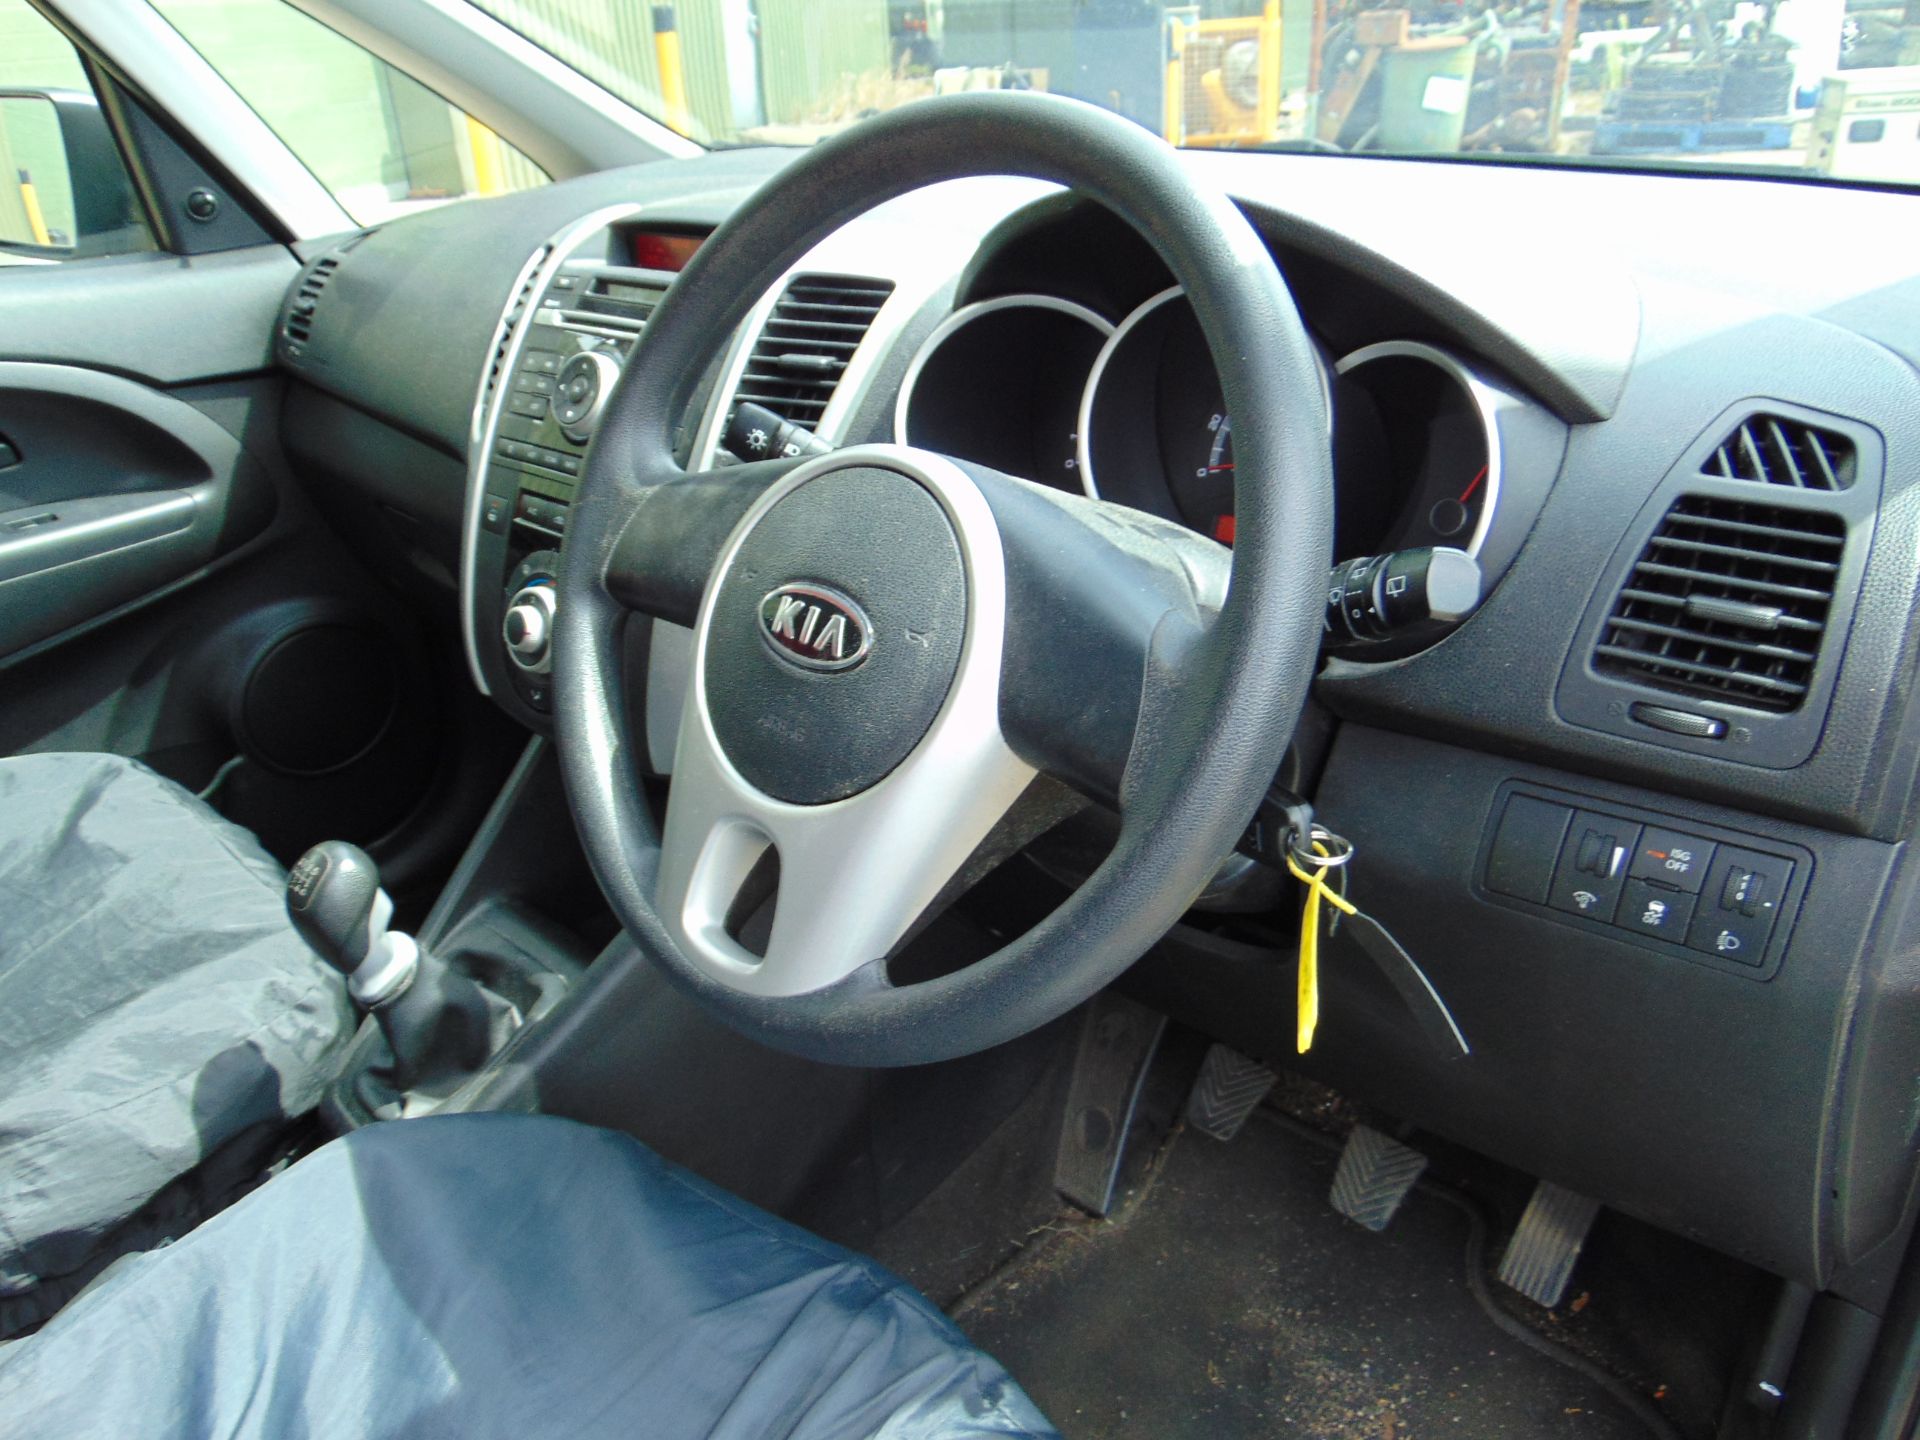 2011 Kia Venga EcoDynamics 1.4 CRDi 5 Door Diesel Hatchback Only 52,622 Miles! *NO VAT / NO PREMIUM* - Image 11 of 20